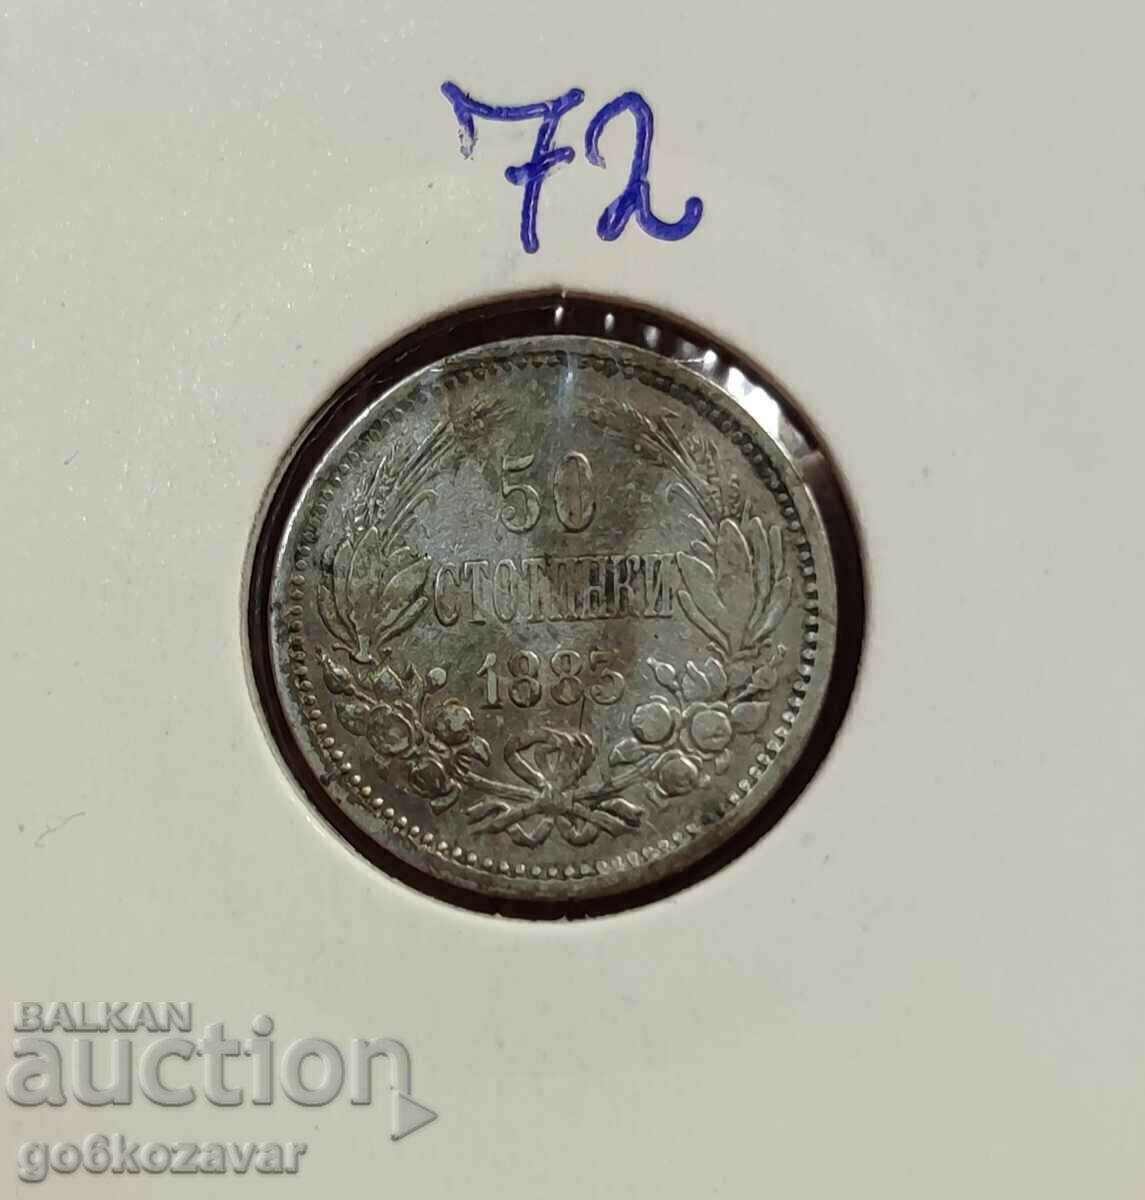 Bulgaria 50 cent 1883 argint.